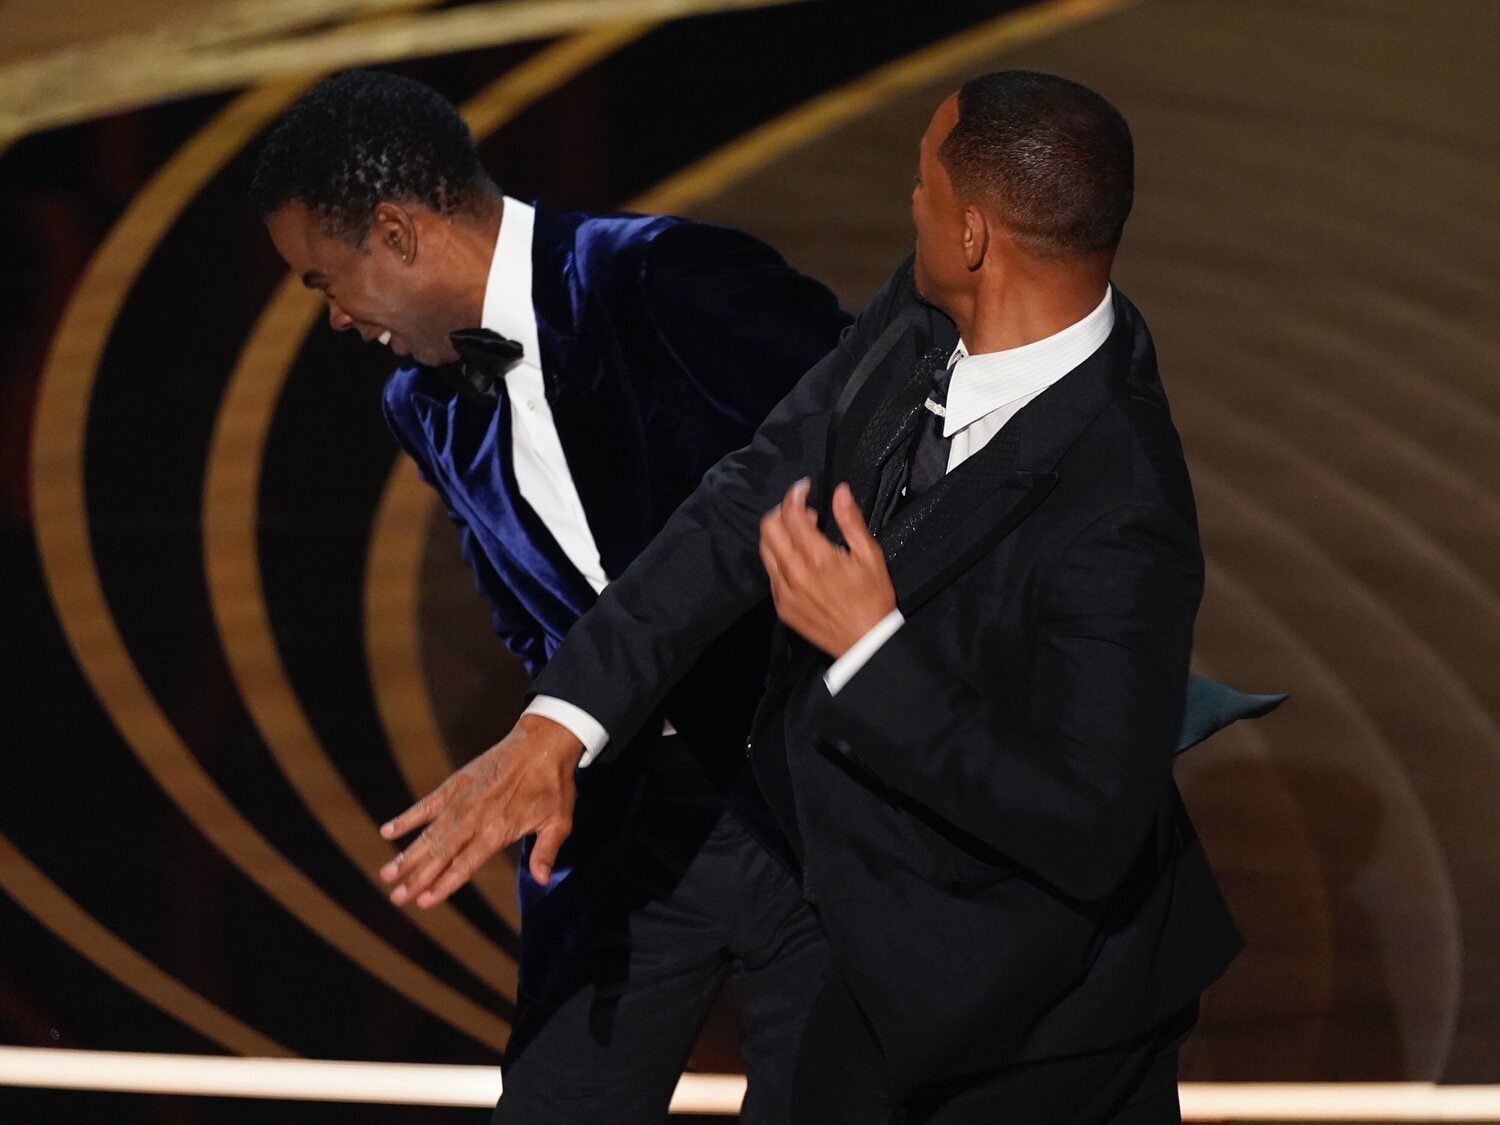 La bofetada de Will Smith a Chris Rock en la gala de los Oscar por un chiste de mal gusto